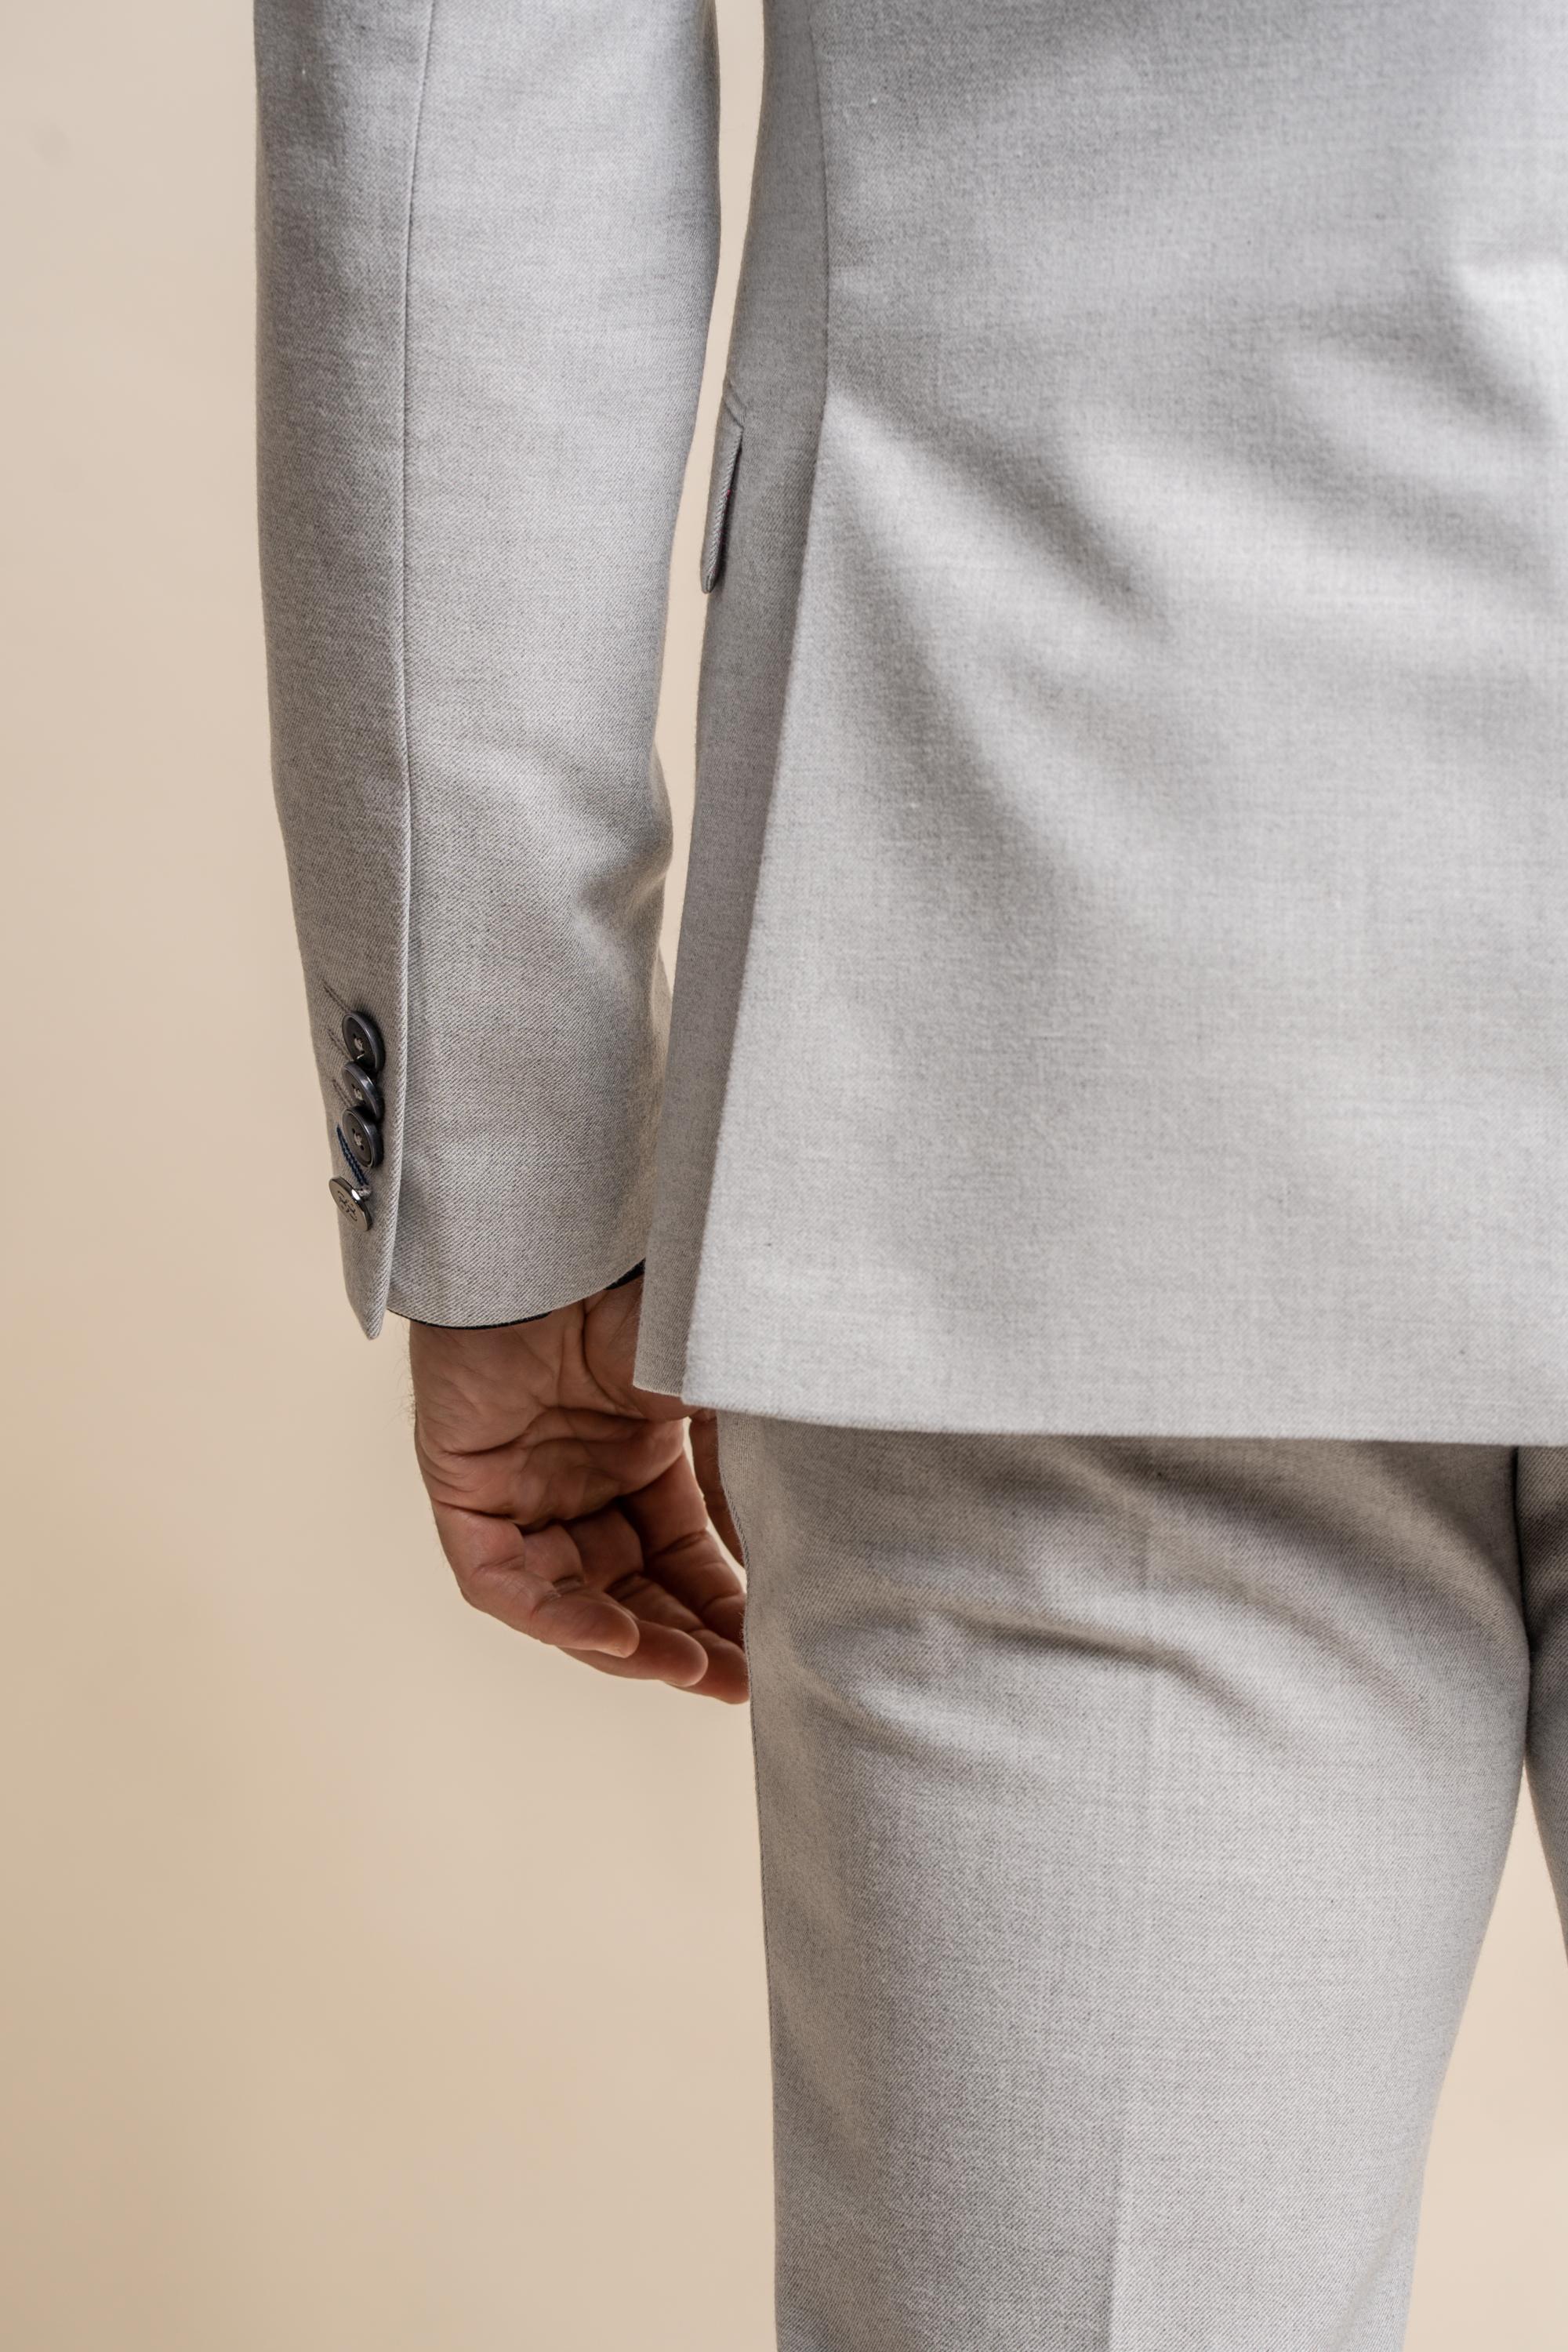   Men's Tweed Slim Fit Formal Suit Jacket - FURIOUS Ivory